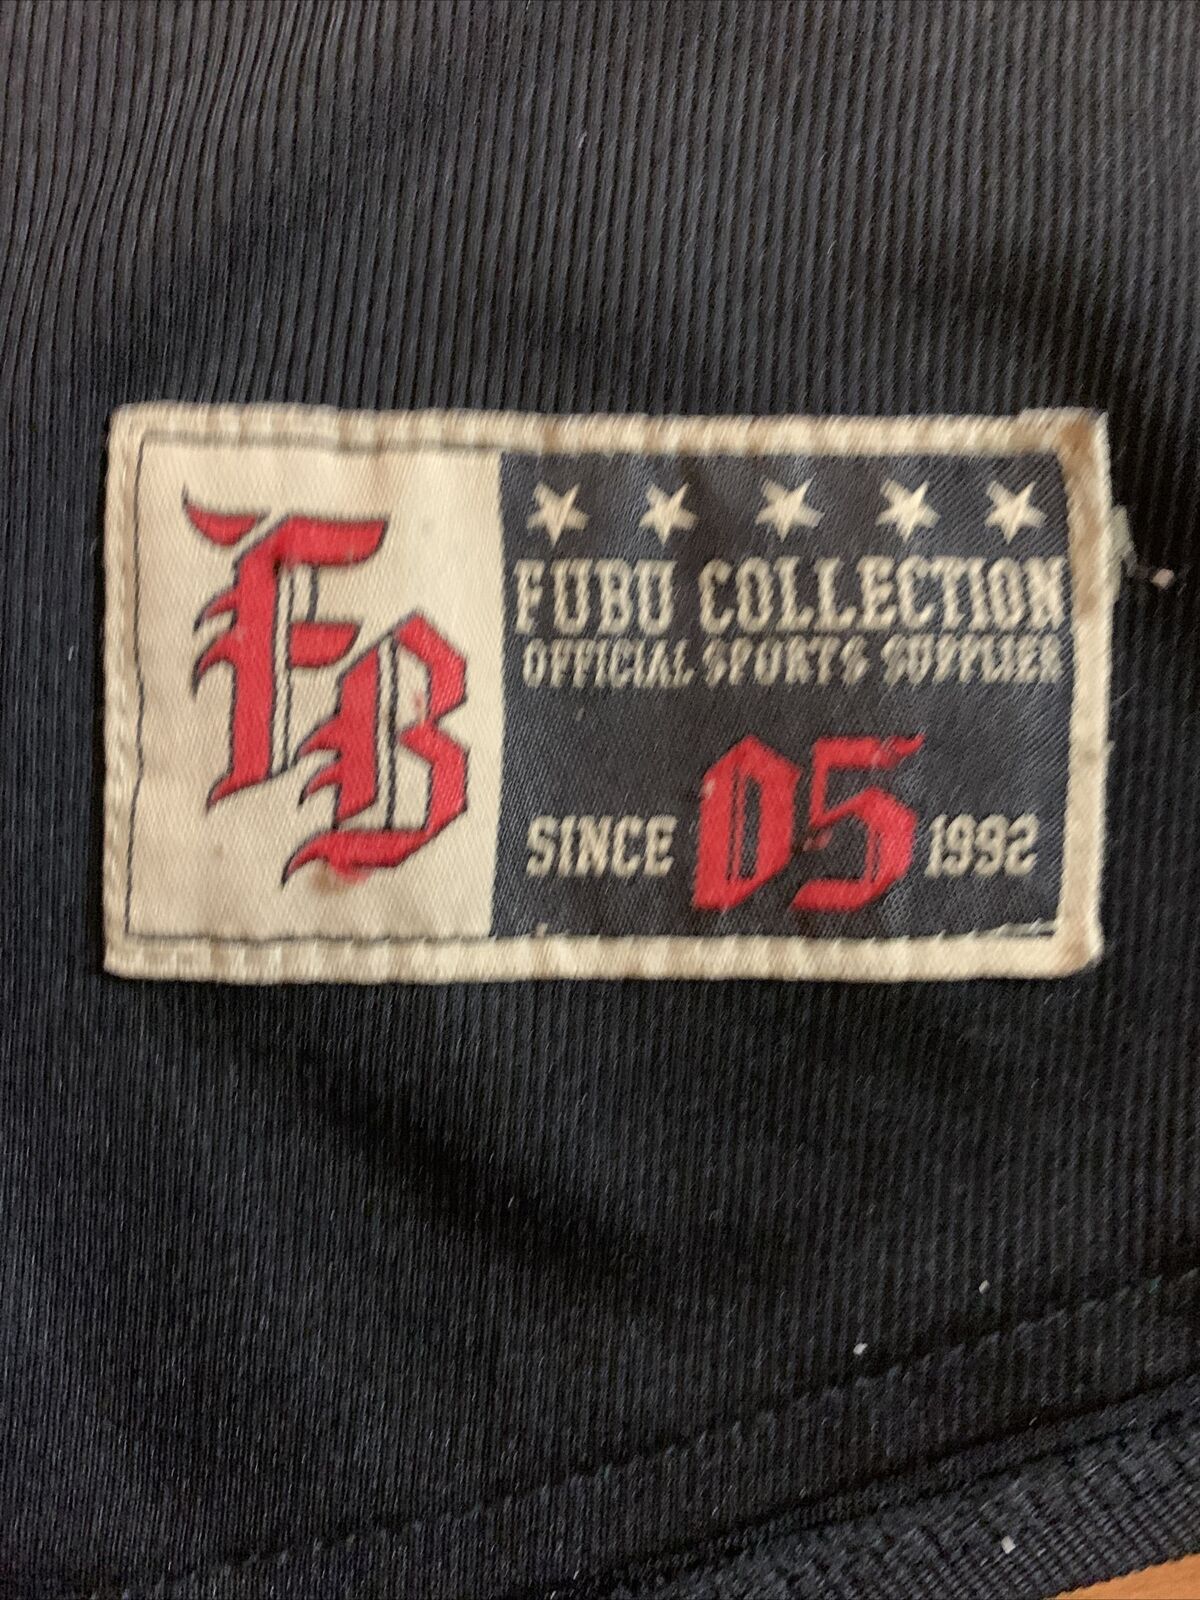 Vintage FUBU Sleeveless Jersey Mens Size XL - image 4